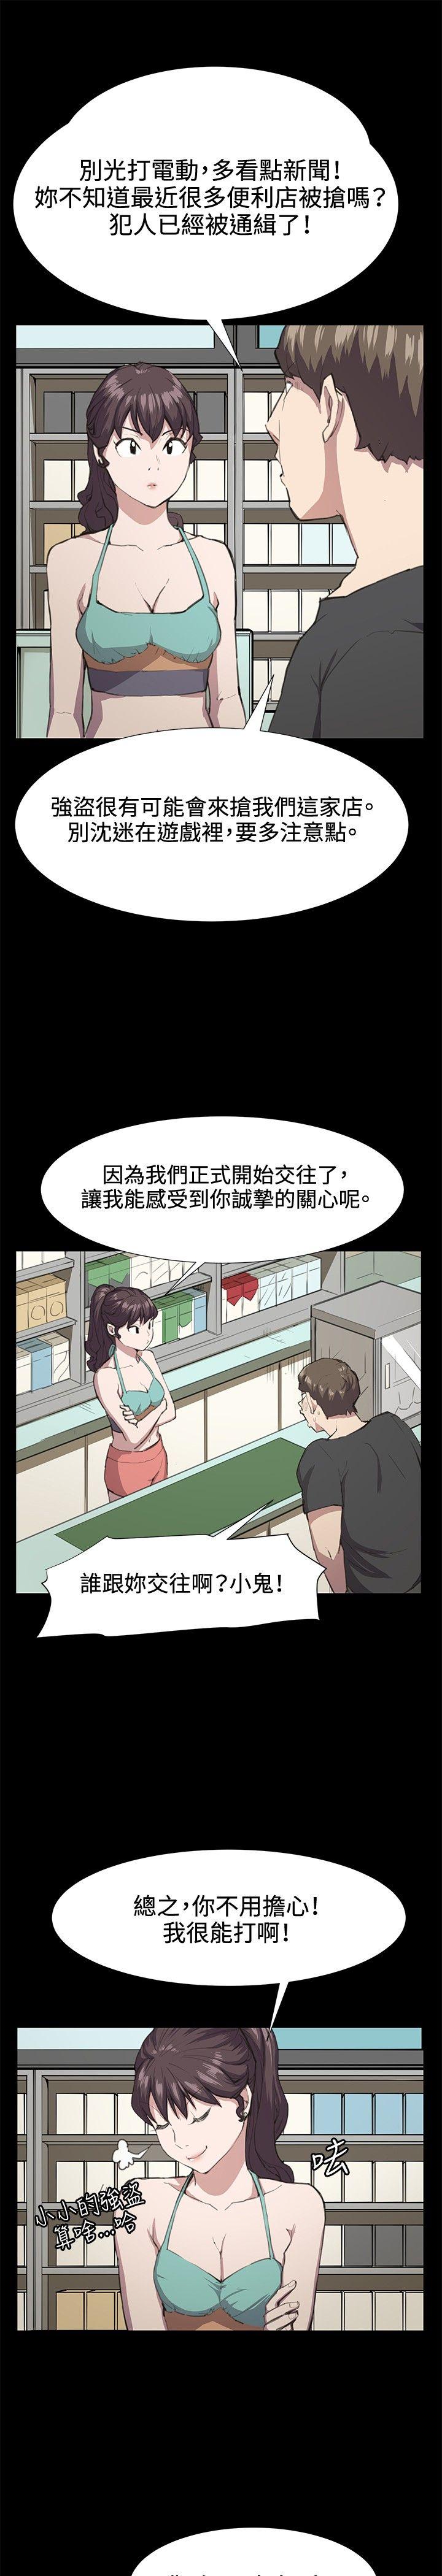 韩国污漫画 深夜便利店 第21话 5